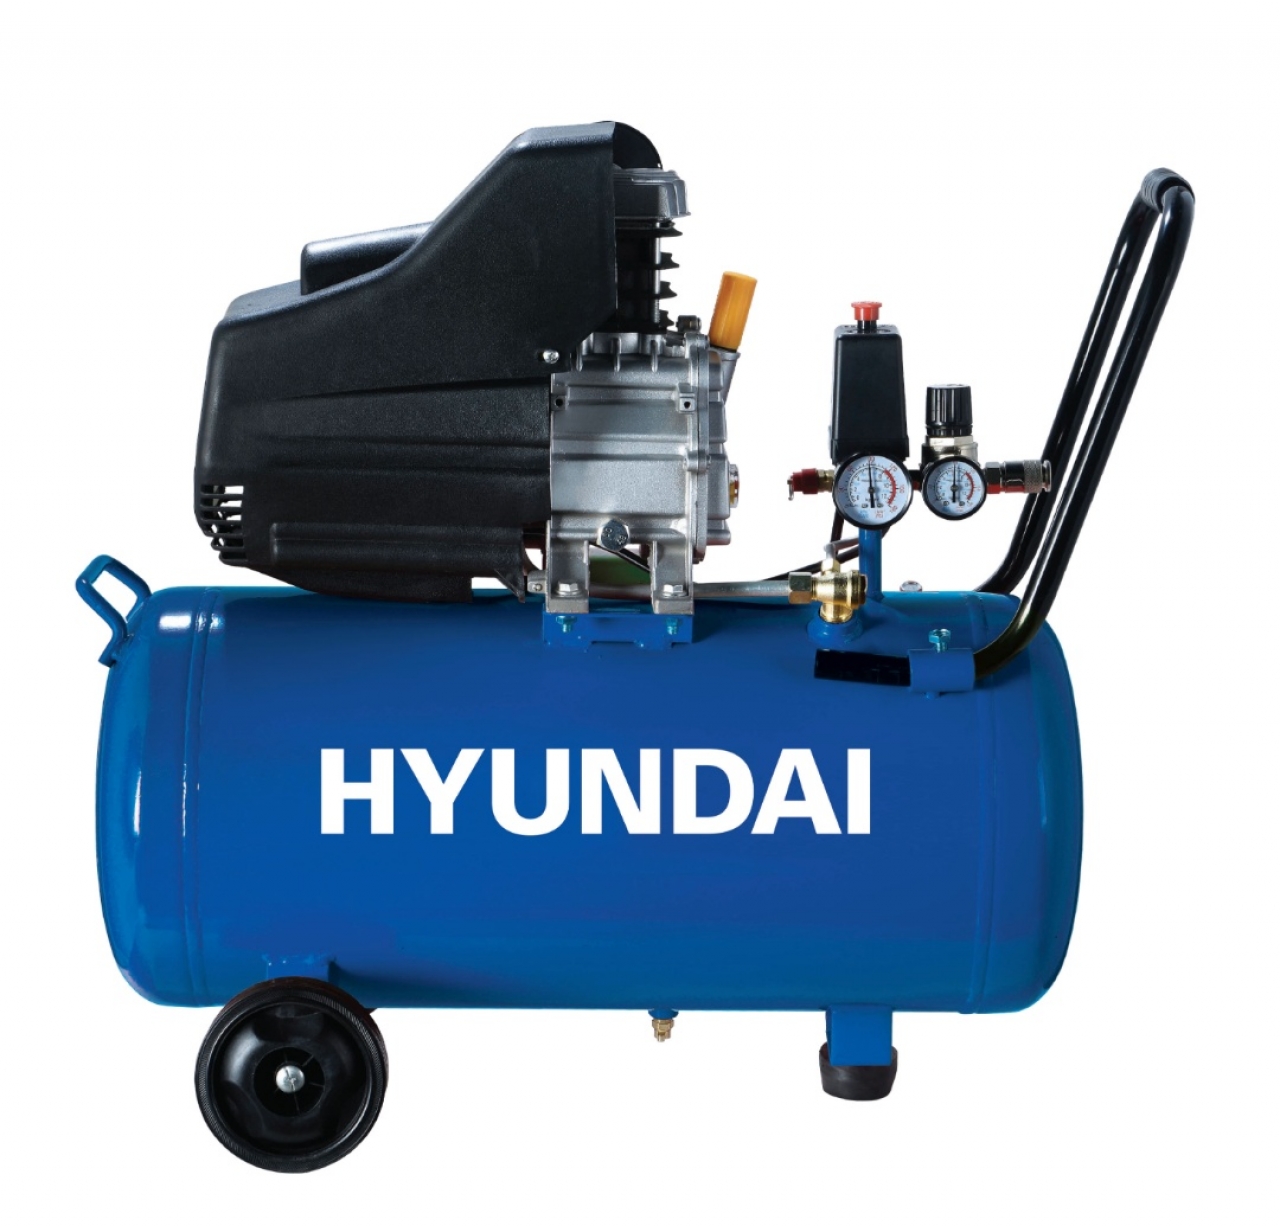 HYAC24-1S Compresor de Aire Silencioso Hyundai Motor Eléctrico Tanque 24L  Caudal 125L/m Voltaje 230V, Fersa Generadores